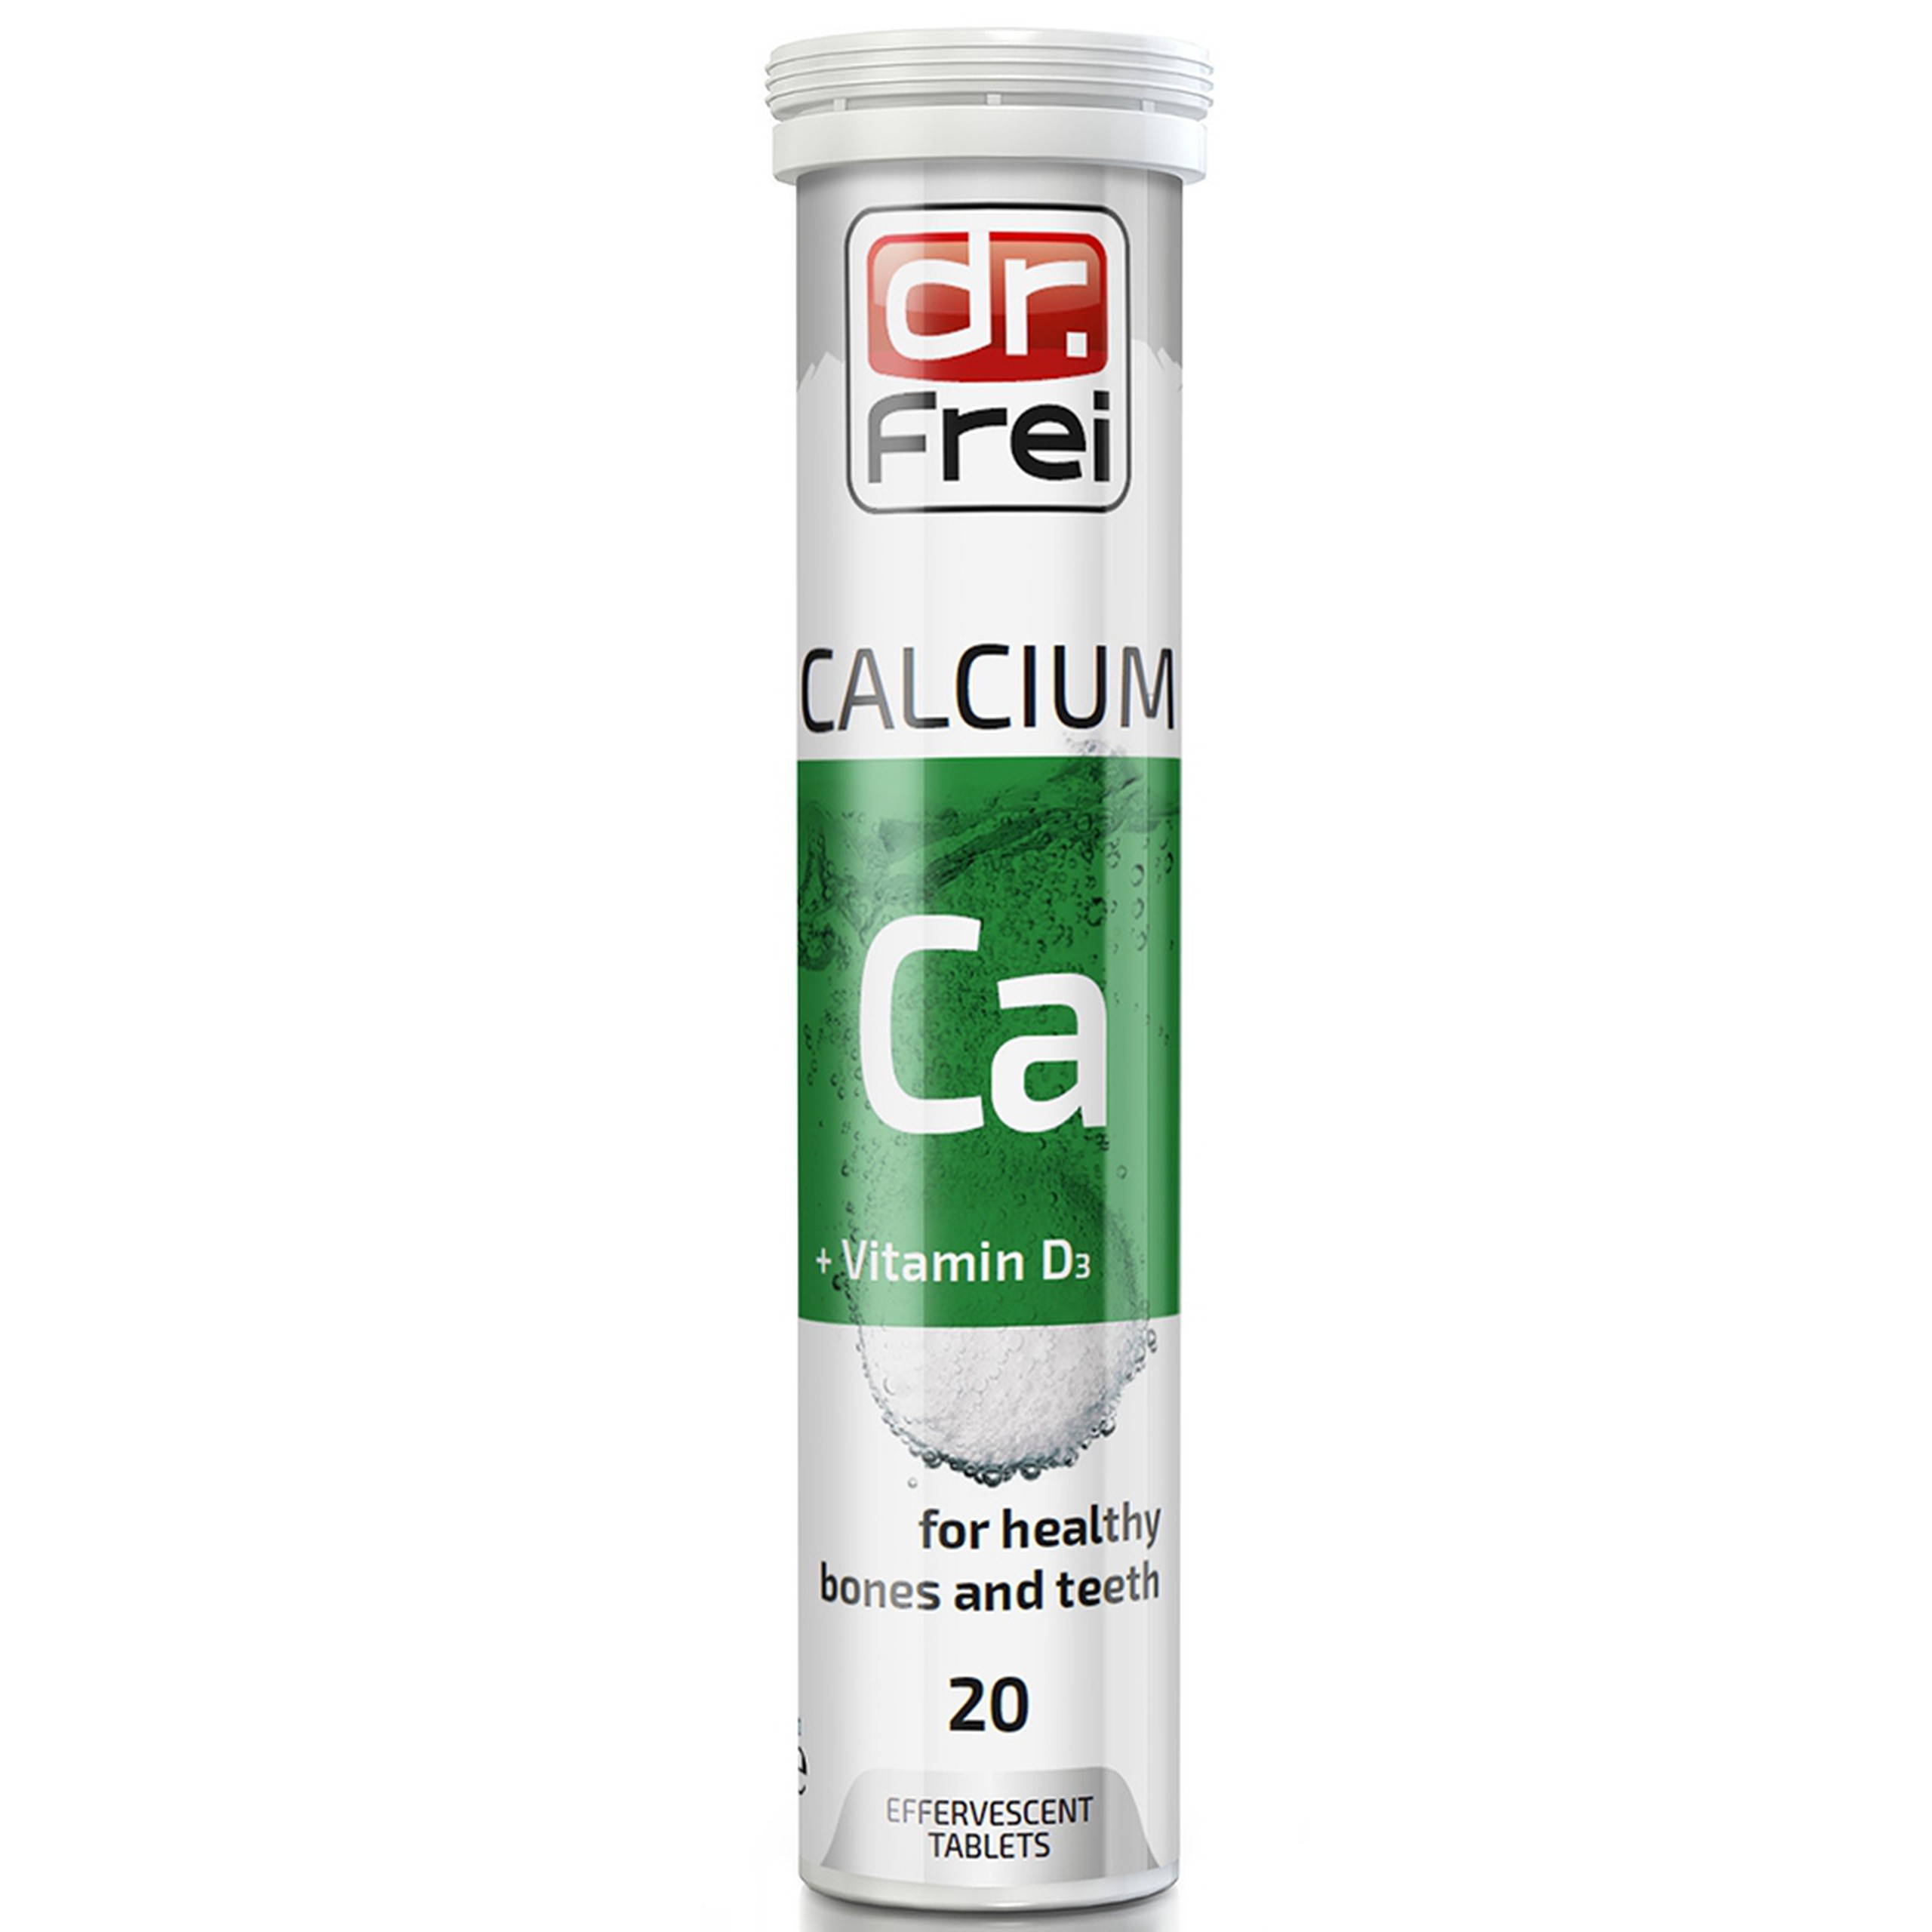 Viên sủi Calcium + Vitamin D3 Dr. Frei ngăn ngừa loãng xương, gãy xương, cho xương chắc khoẻ (20 viên)